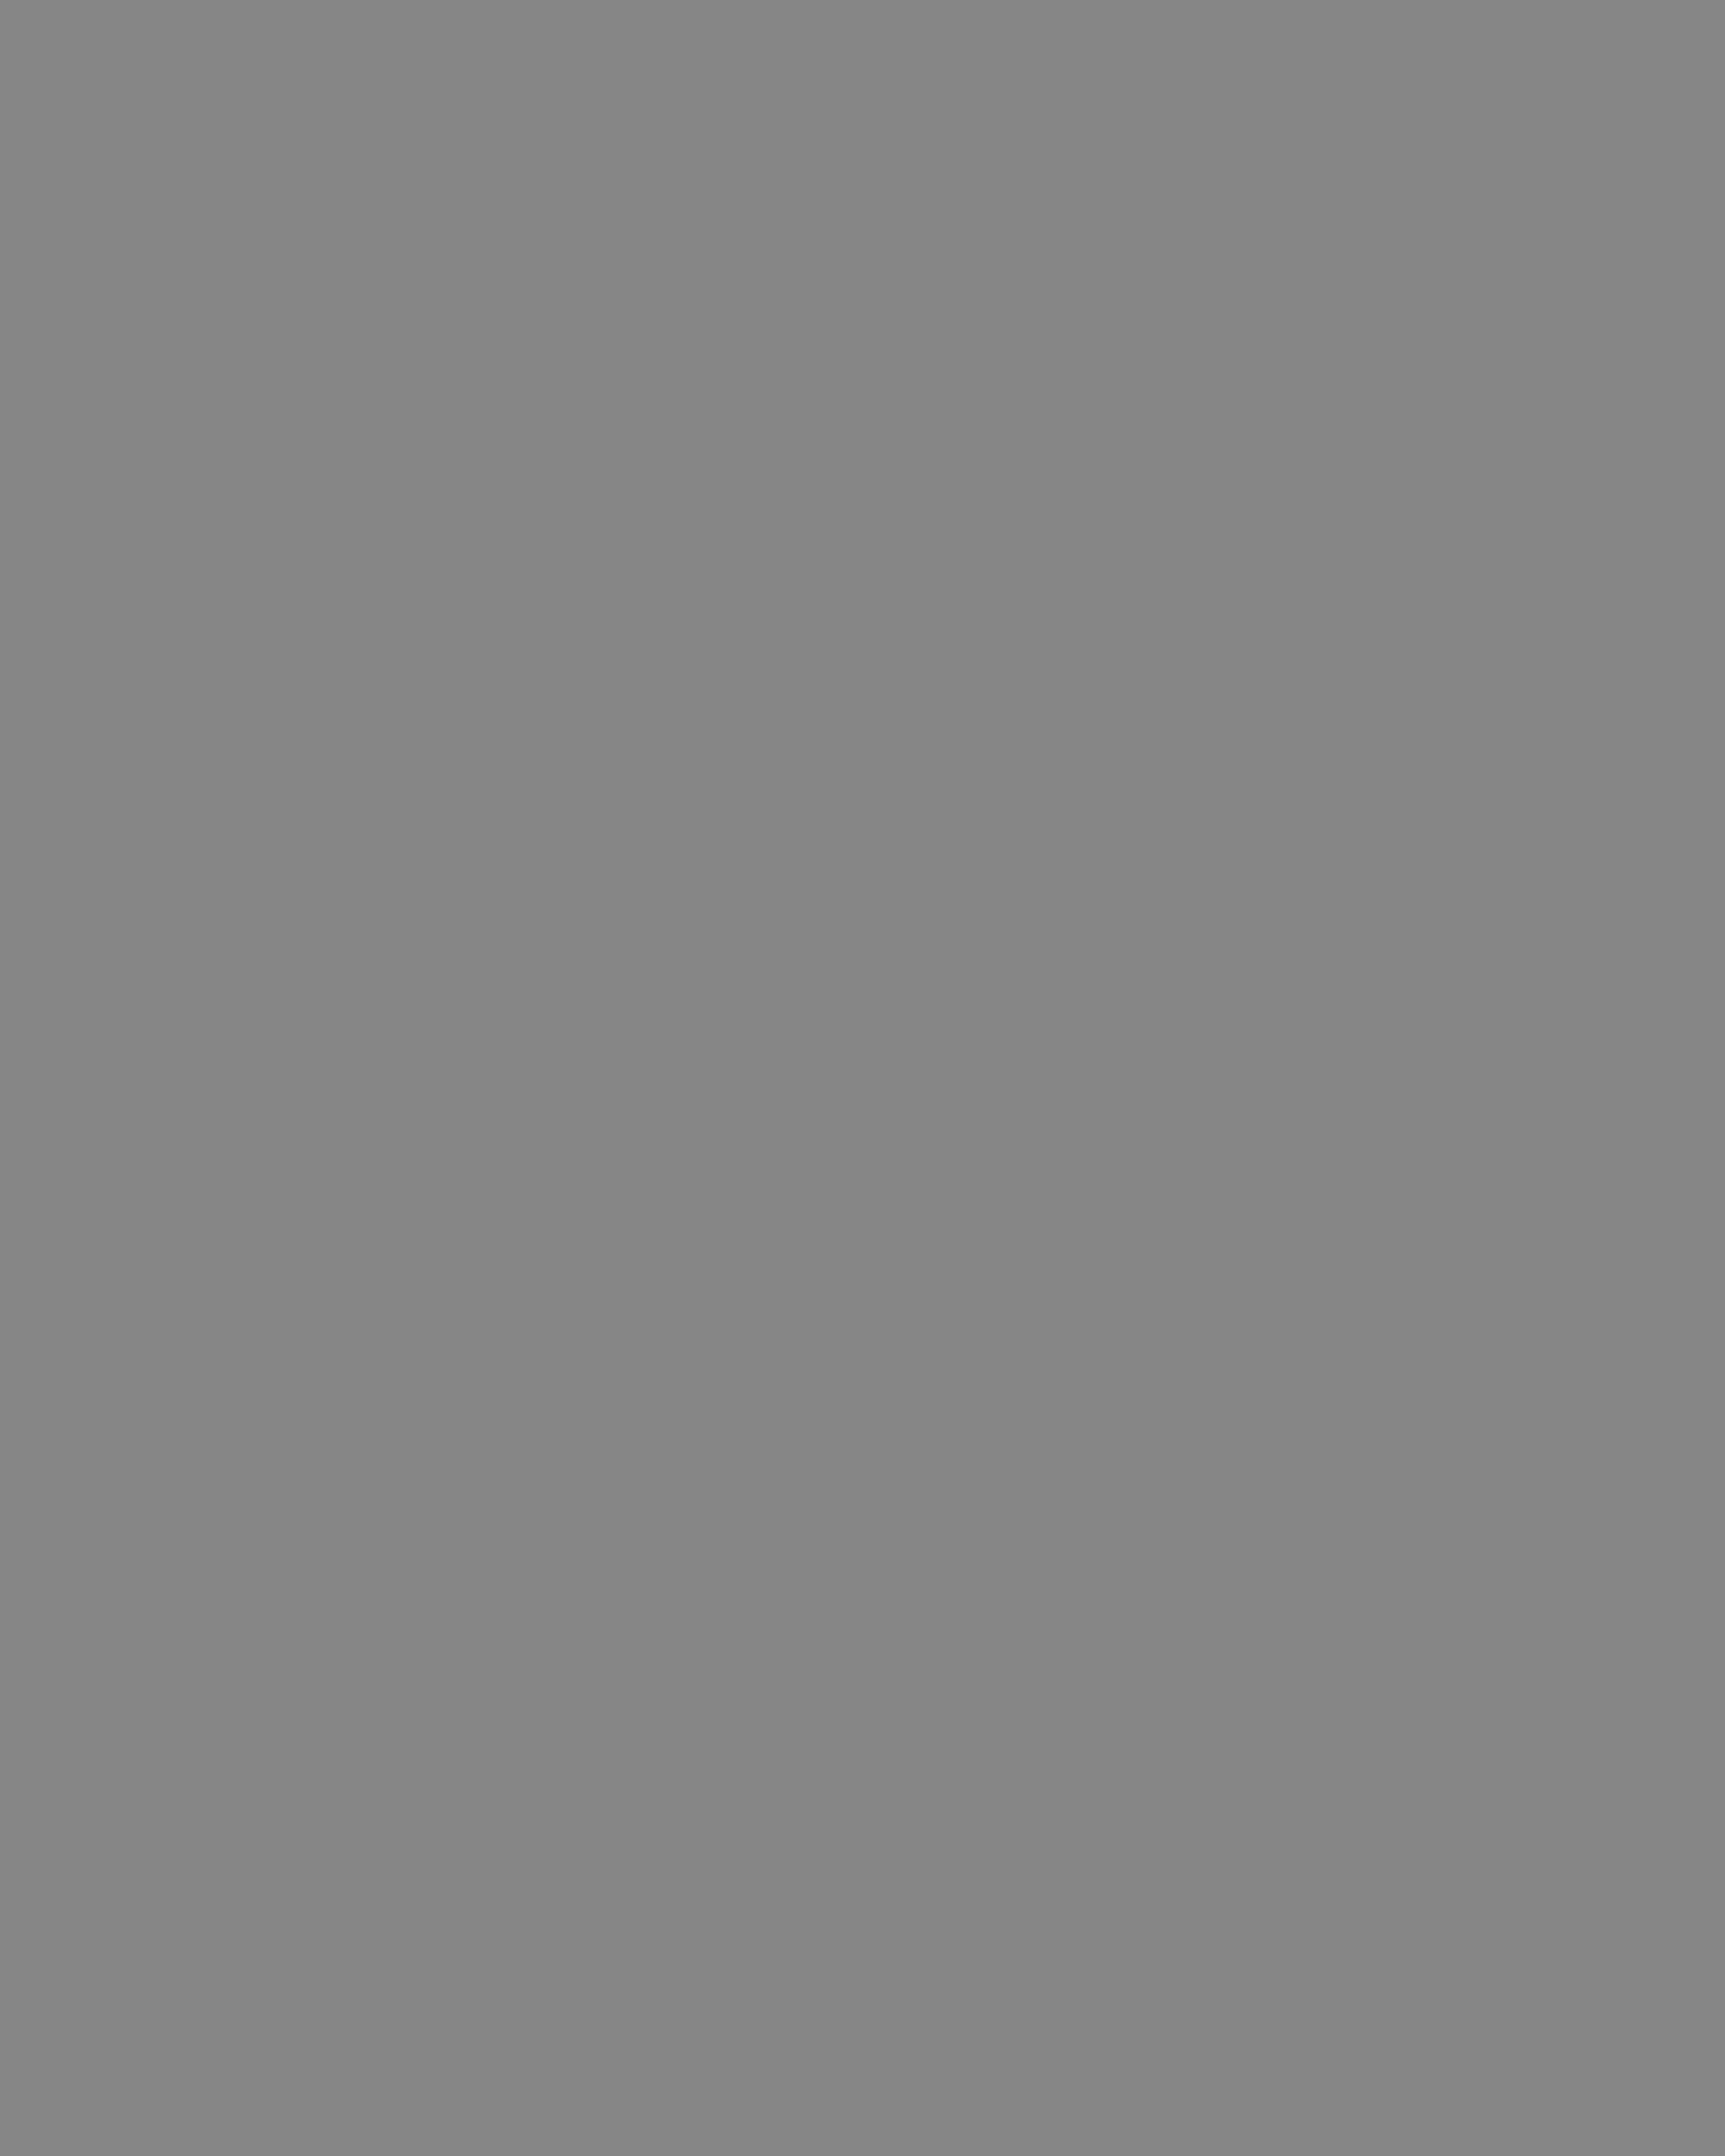 Роберт Рождественский. Москва, 1970-е годы. Фотография: Государственный музей истории литературы, искусства и культуры Алтая, Барнаул